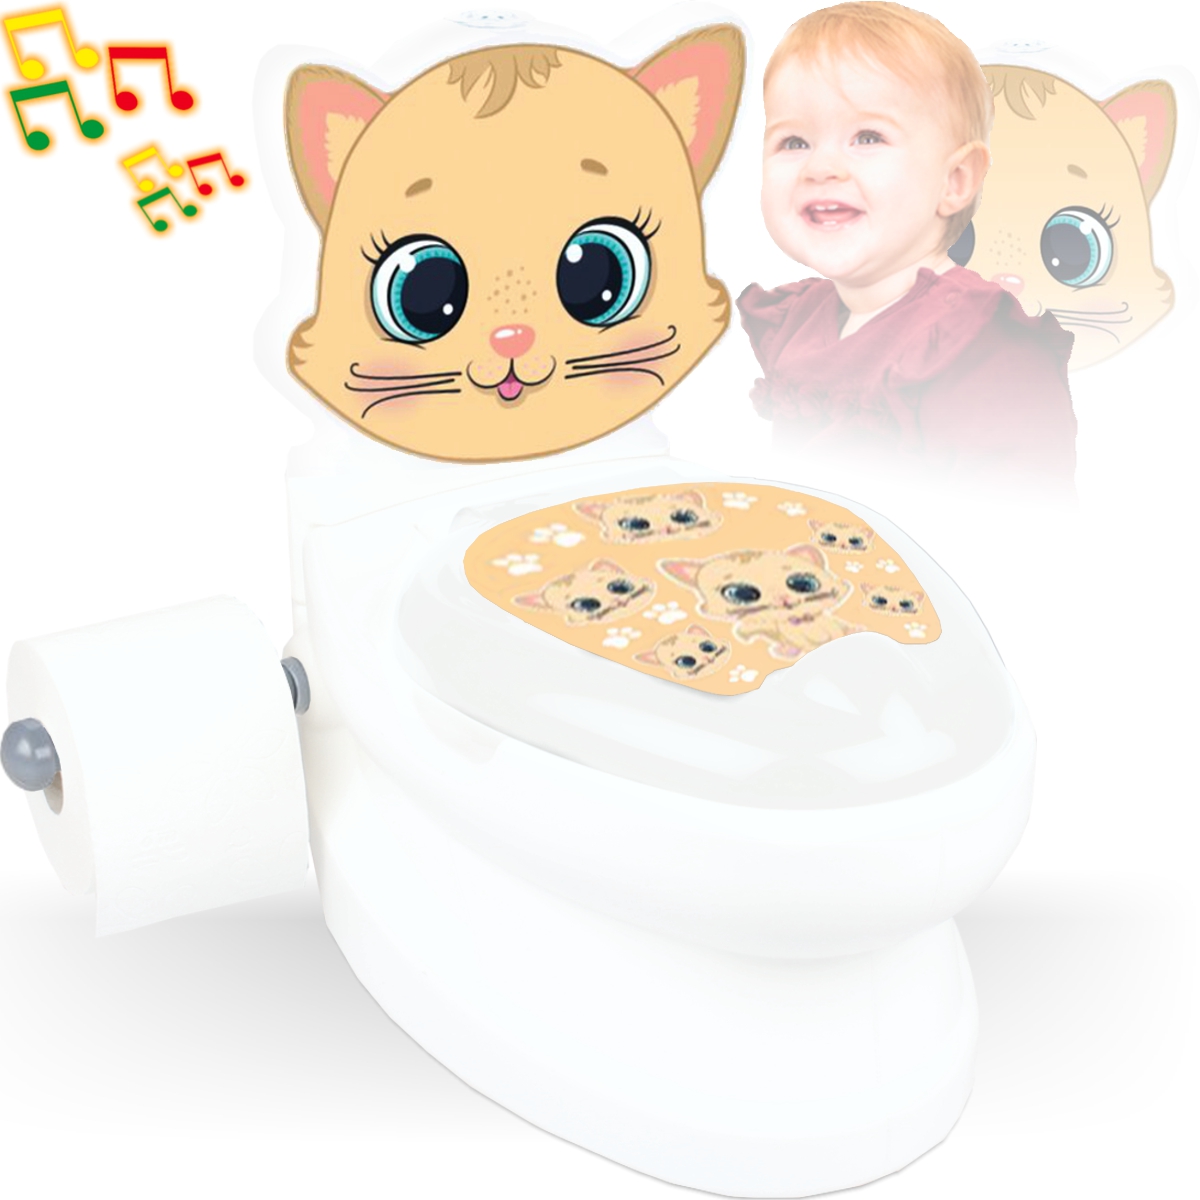 online kaufen Kleine | eBay (460959) - Hund Meine Jamara Spielzeug Mehrfarbig Toilette